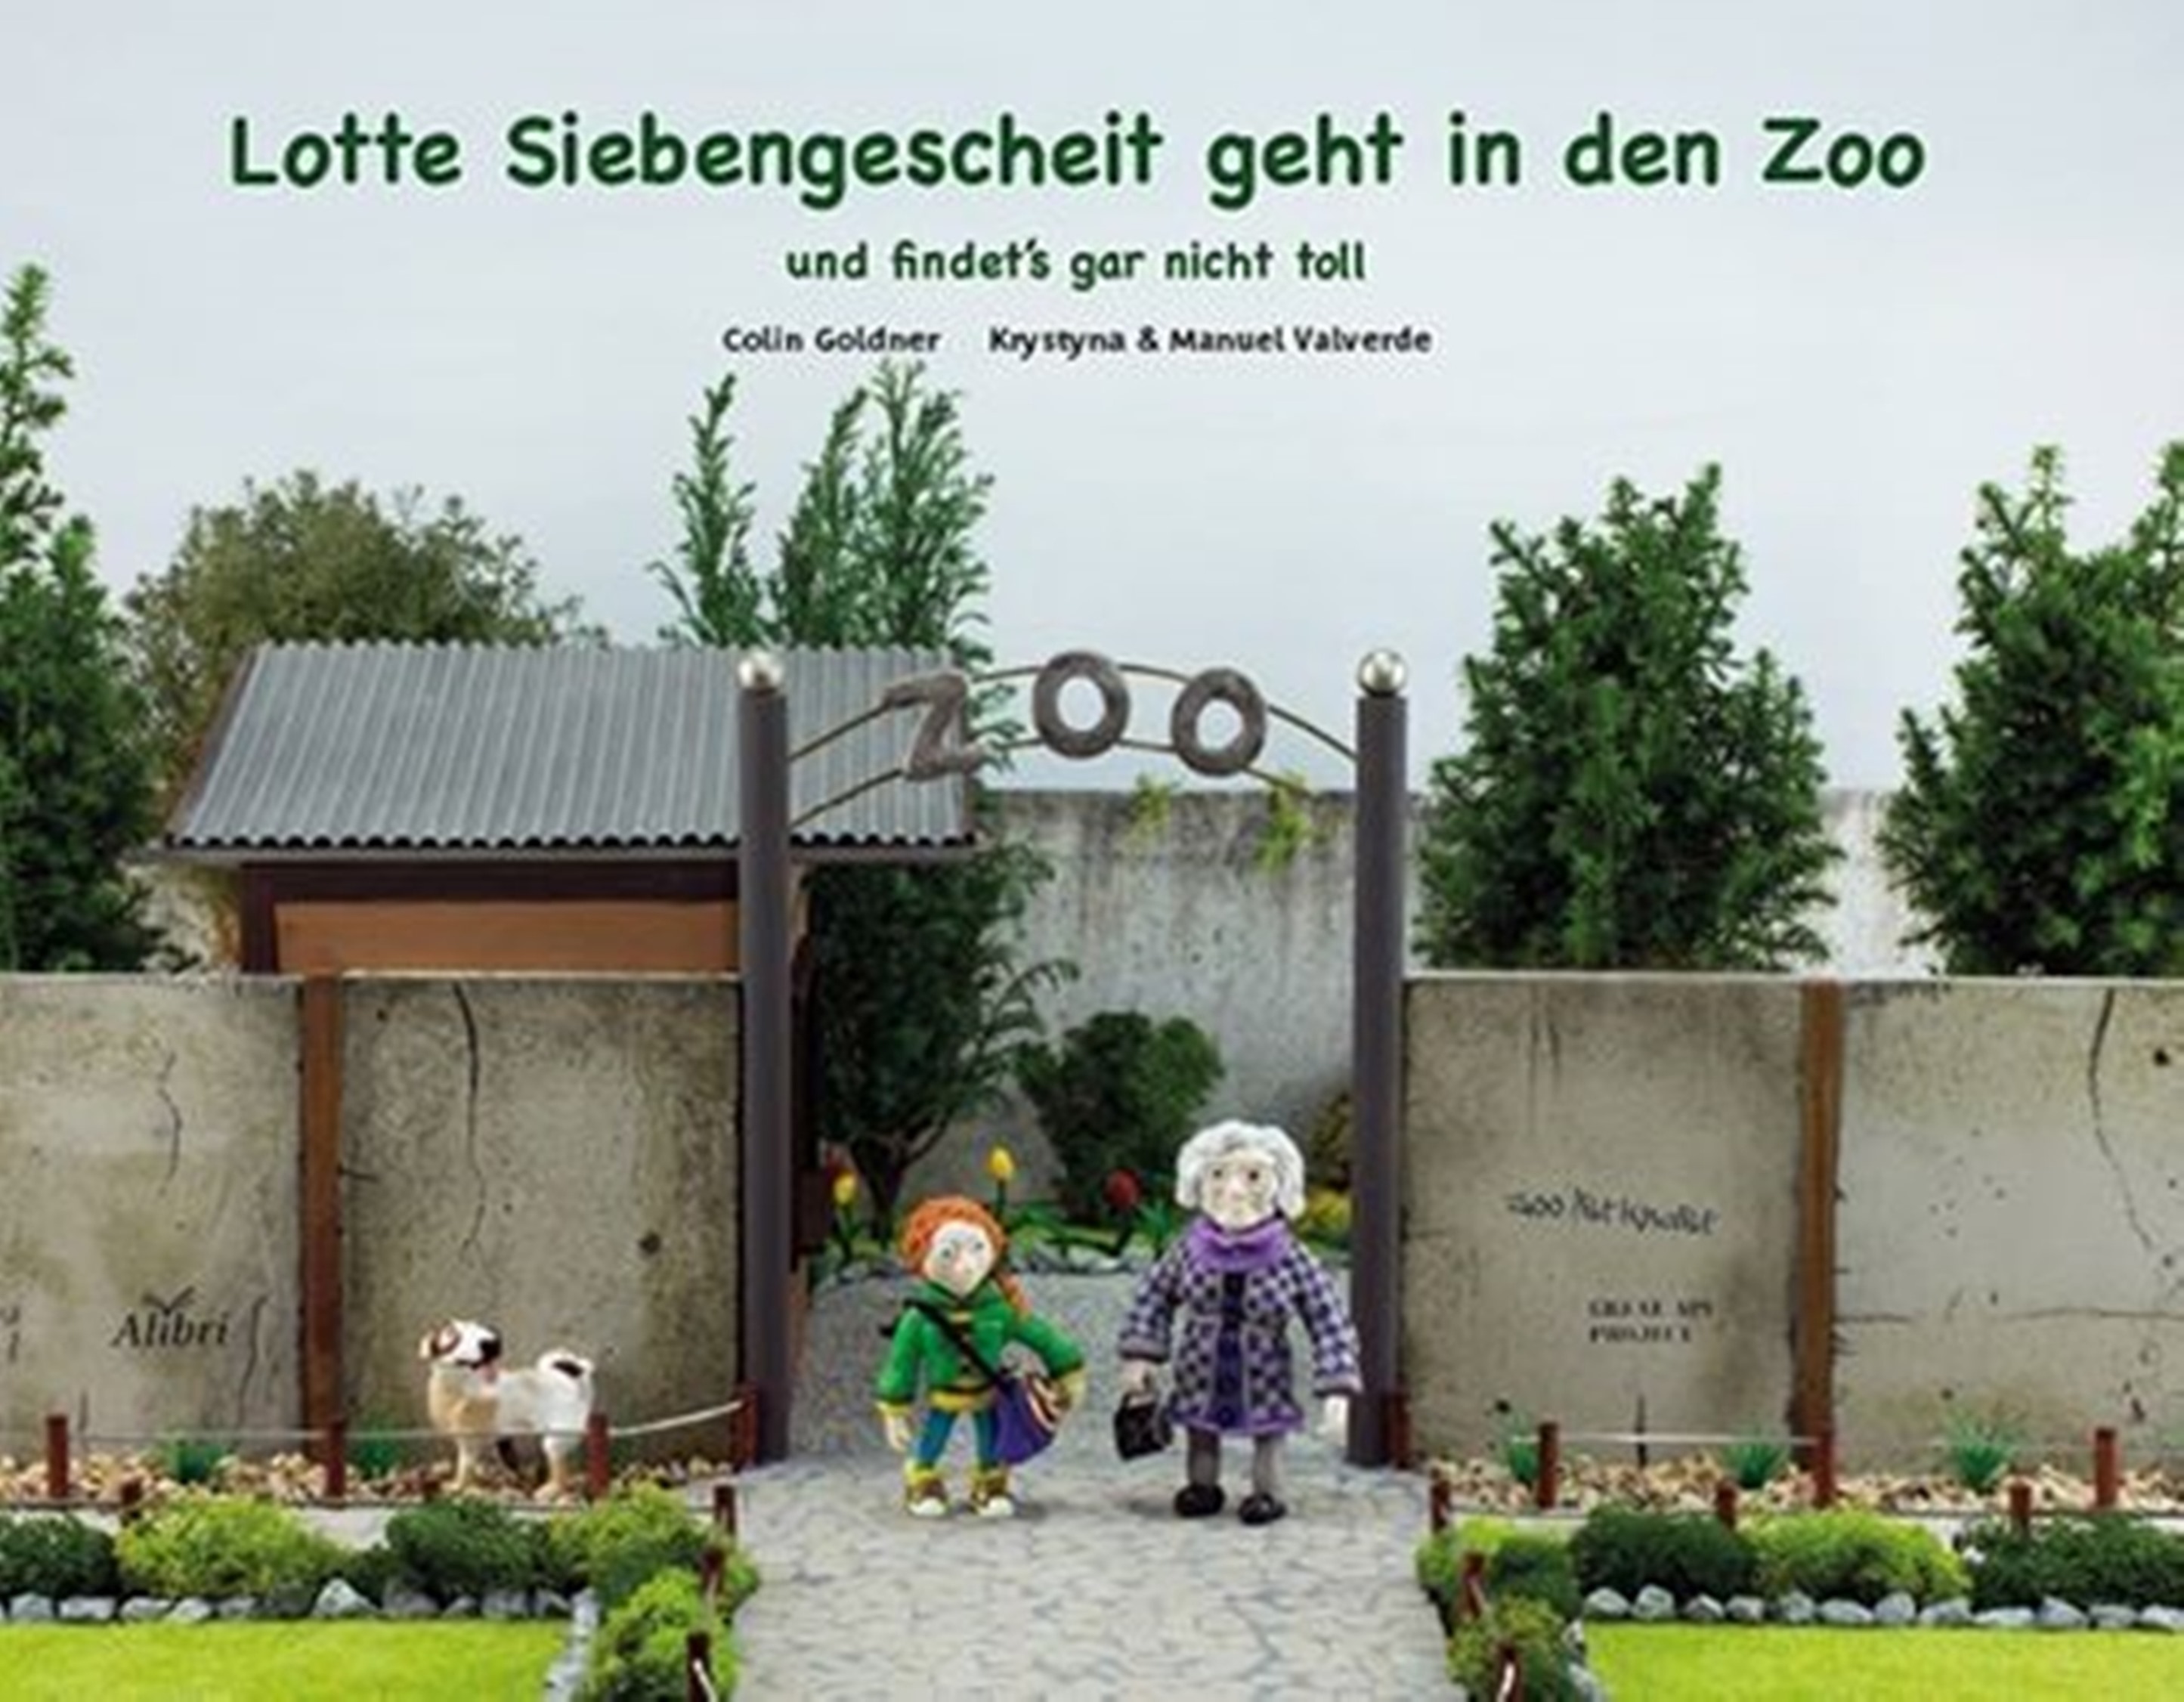 Cover des Buches "Lotte Siebengescheit geht in den Zoo - und findet's gar nicht toll"